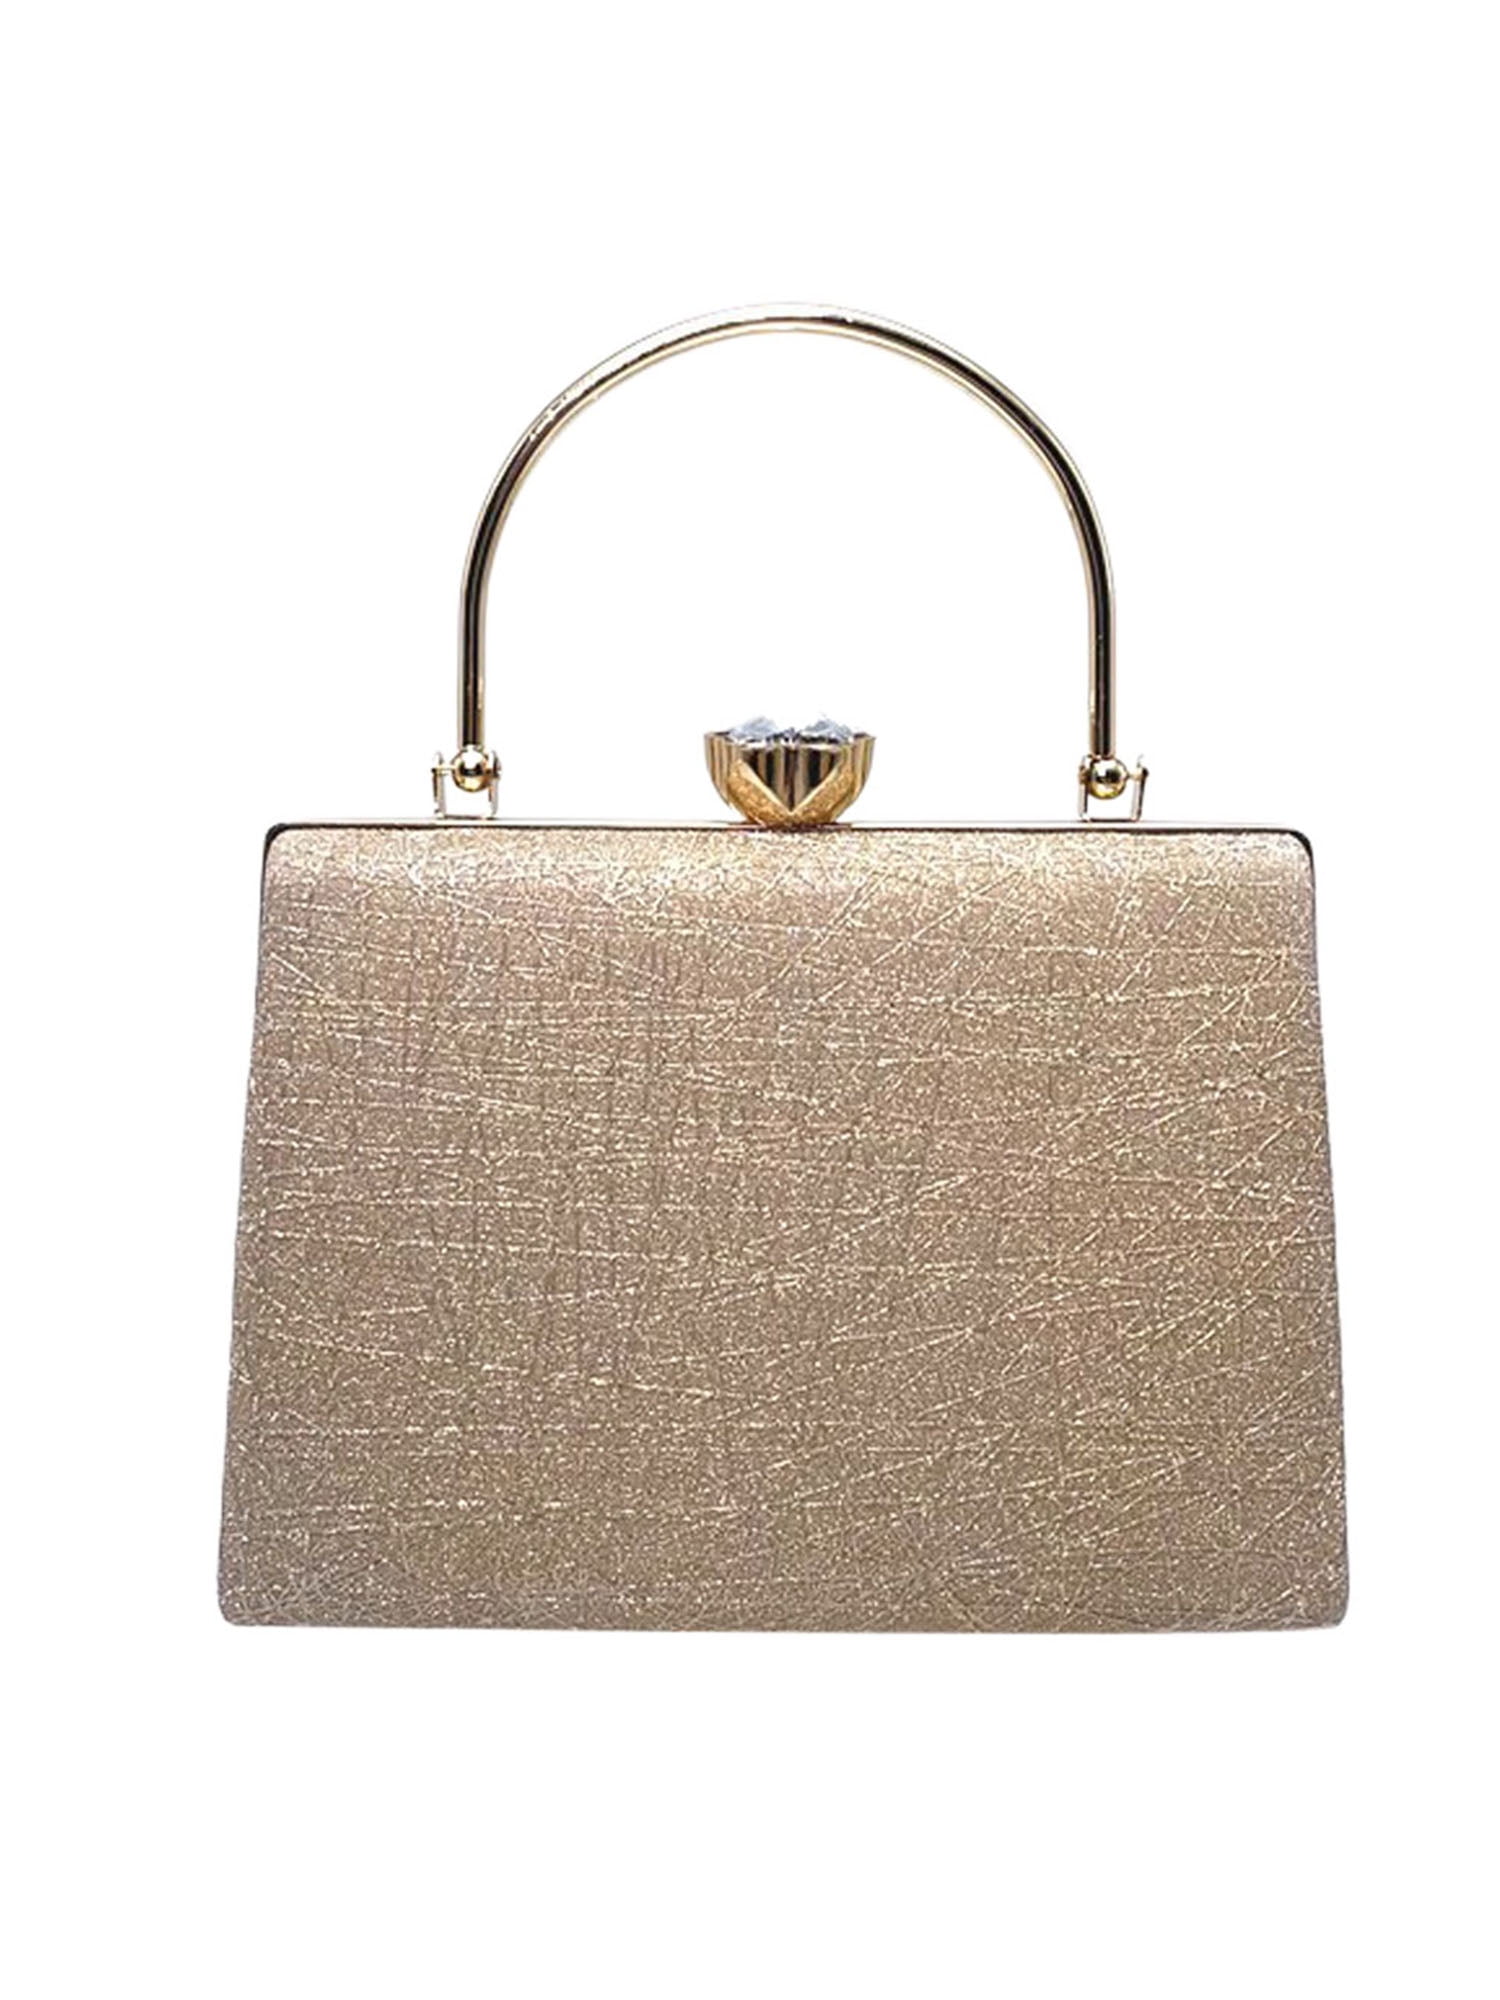 Gold Clutch Crystal Bag Evening Bridal Purse Wedding Party Handbag Tassels  Bag | eBay